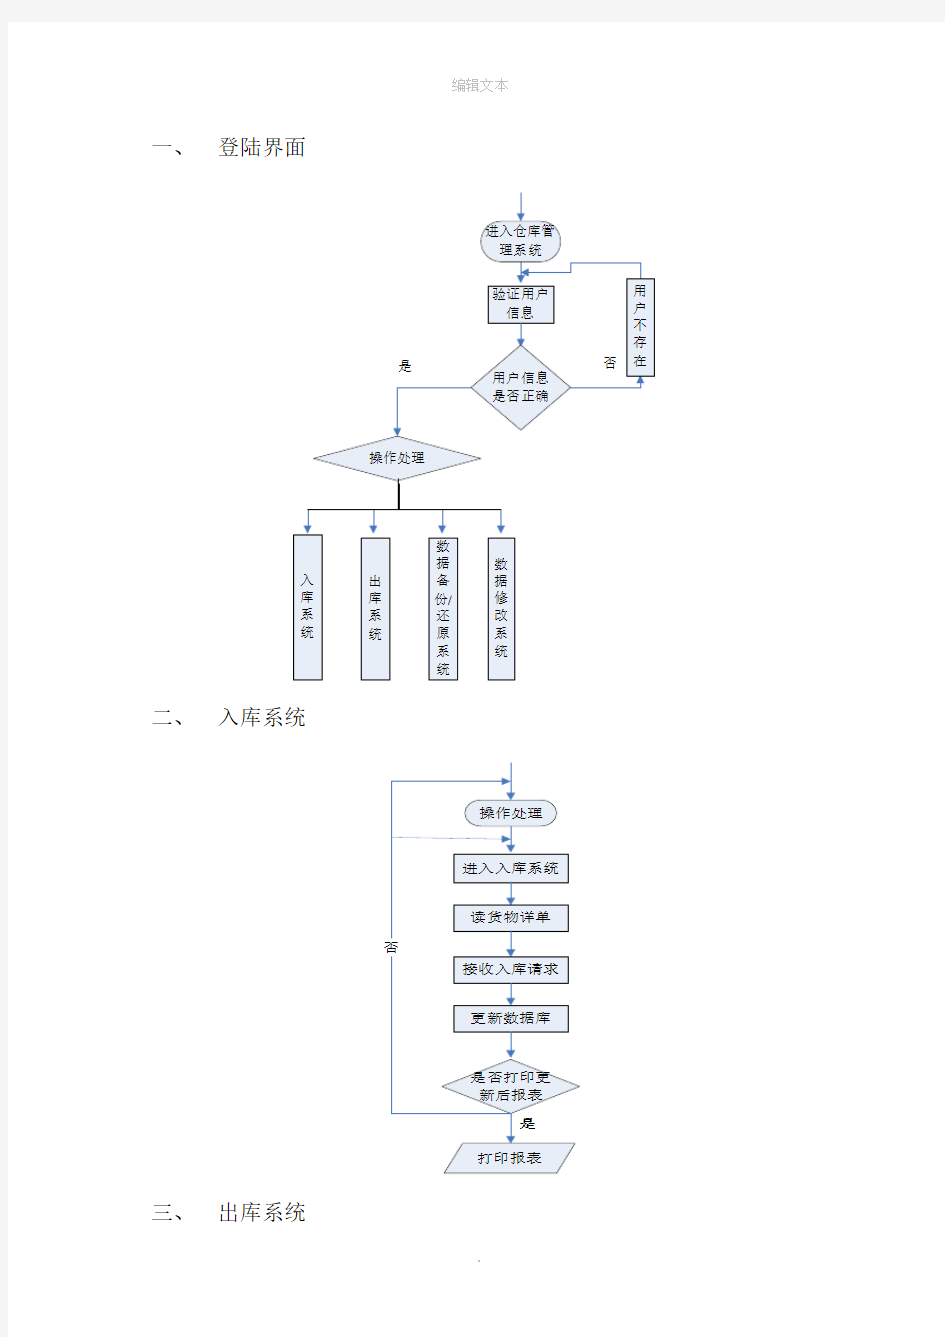 仓库管理系统程序流程图